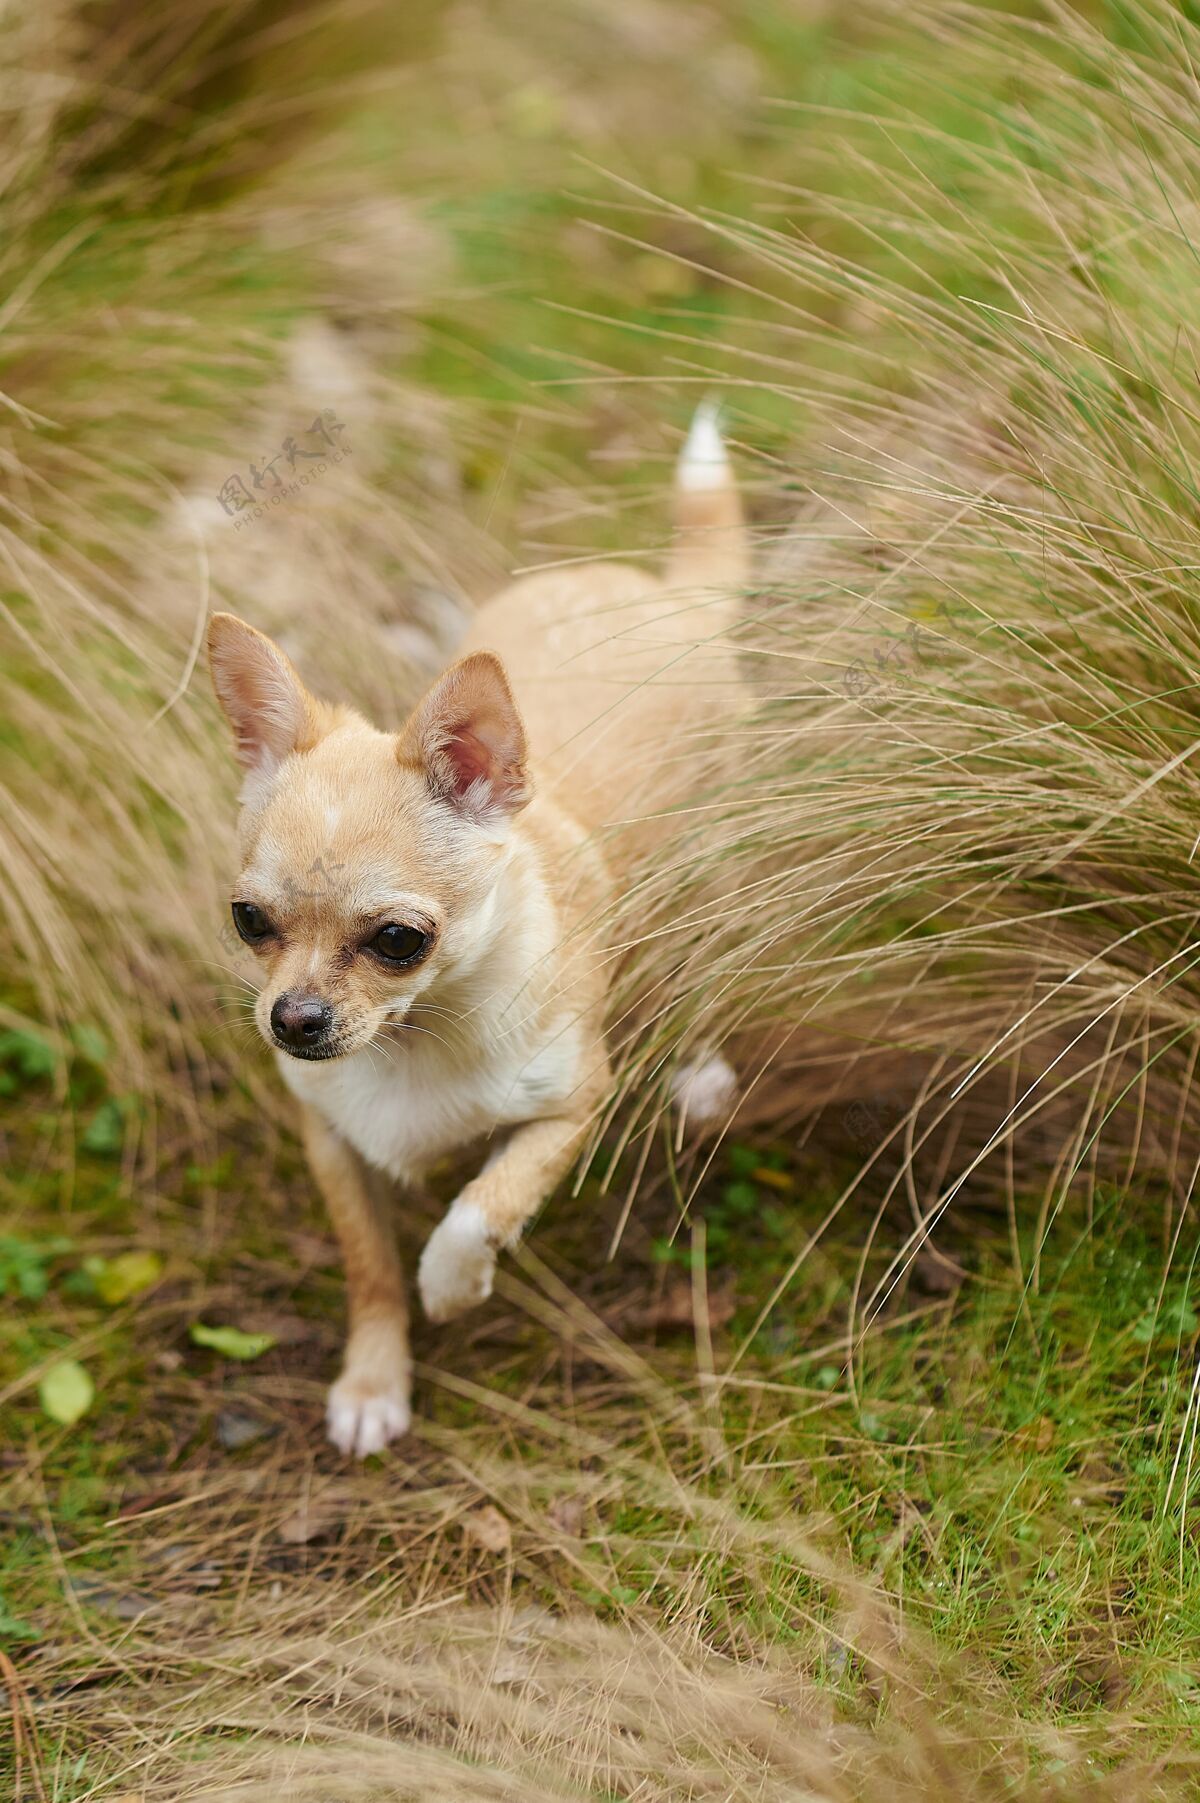 小狗一个小吉娃娃在田野里奔跑的垂直画面公园旅游国内